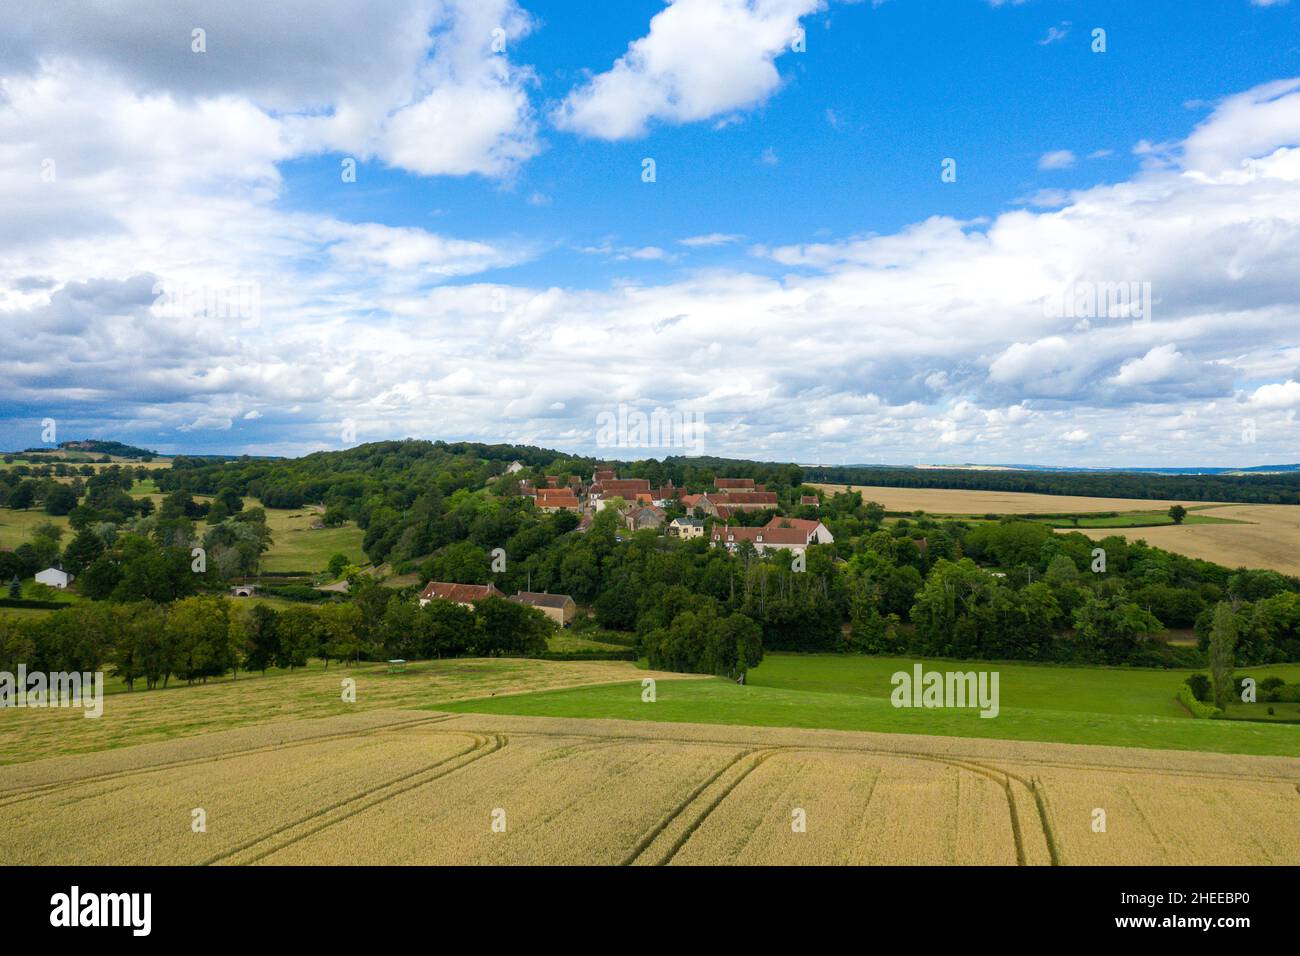 Questa foto di paesaggio è stata scattata in Europa, Francia, Borgogna, Nievre, in estate. Vediamo un villaggio con l'approccio dei campi di grano dopo il raccolto, u Foto Stock